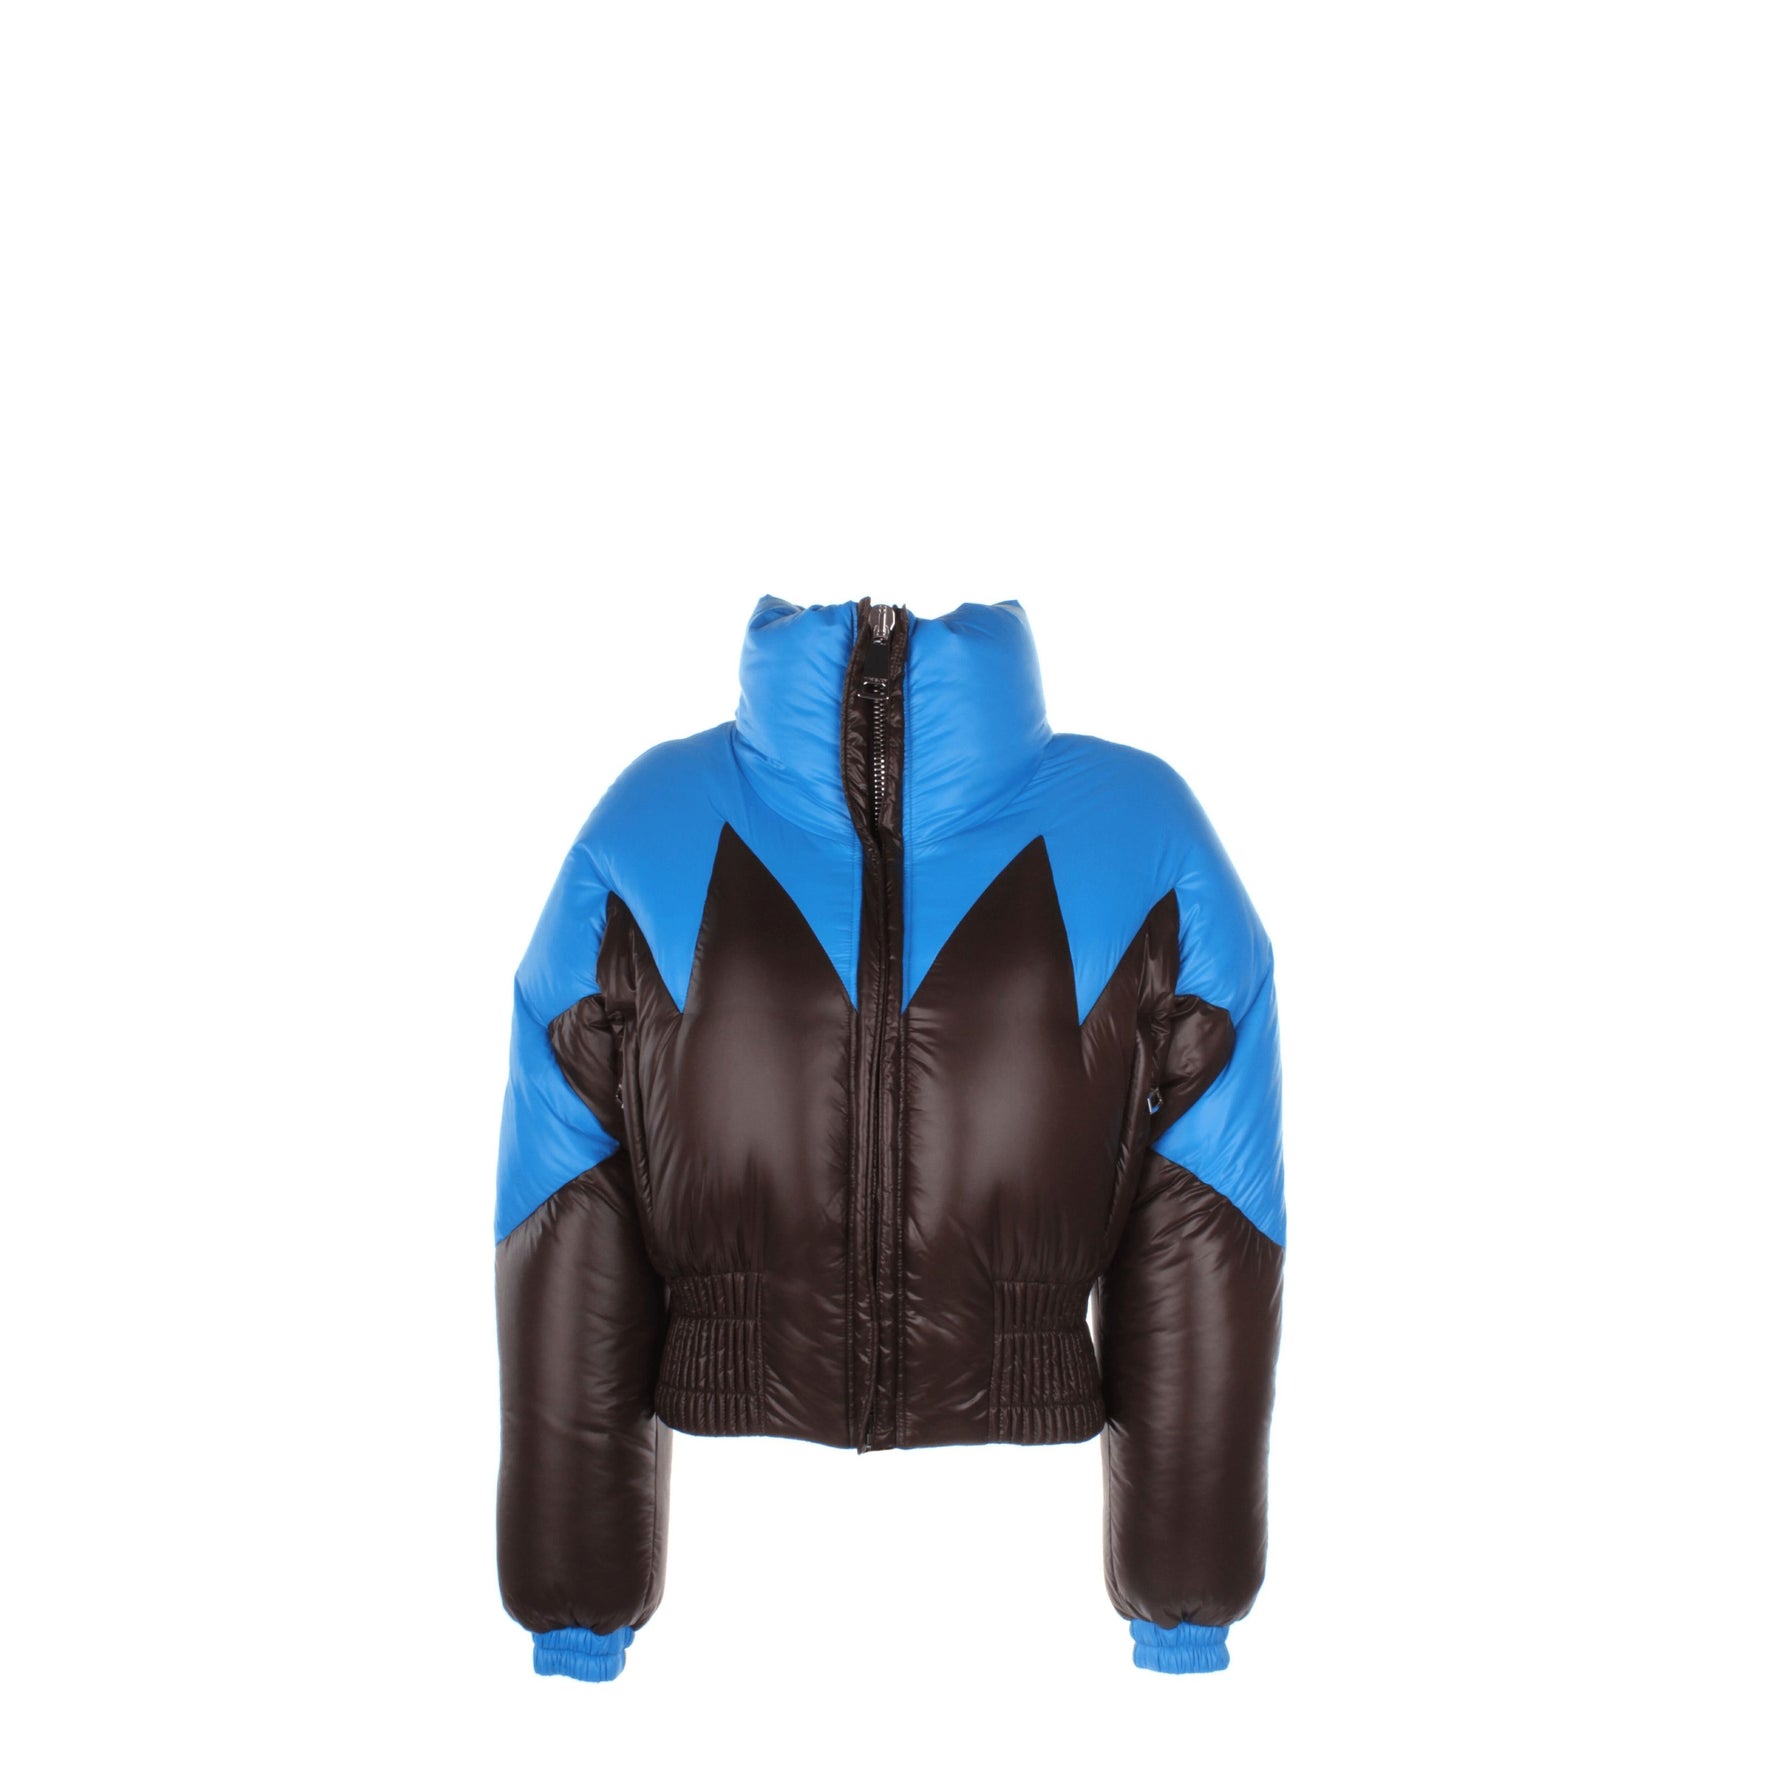 Khrisjoy Idee Regalo duff peak jacket Donna Poliestere Blu Marrone